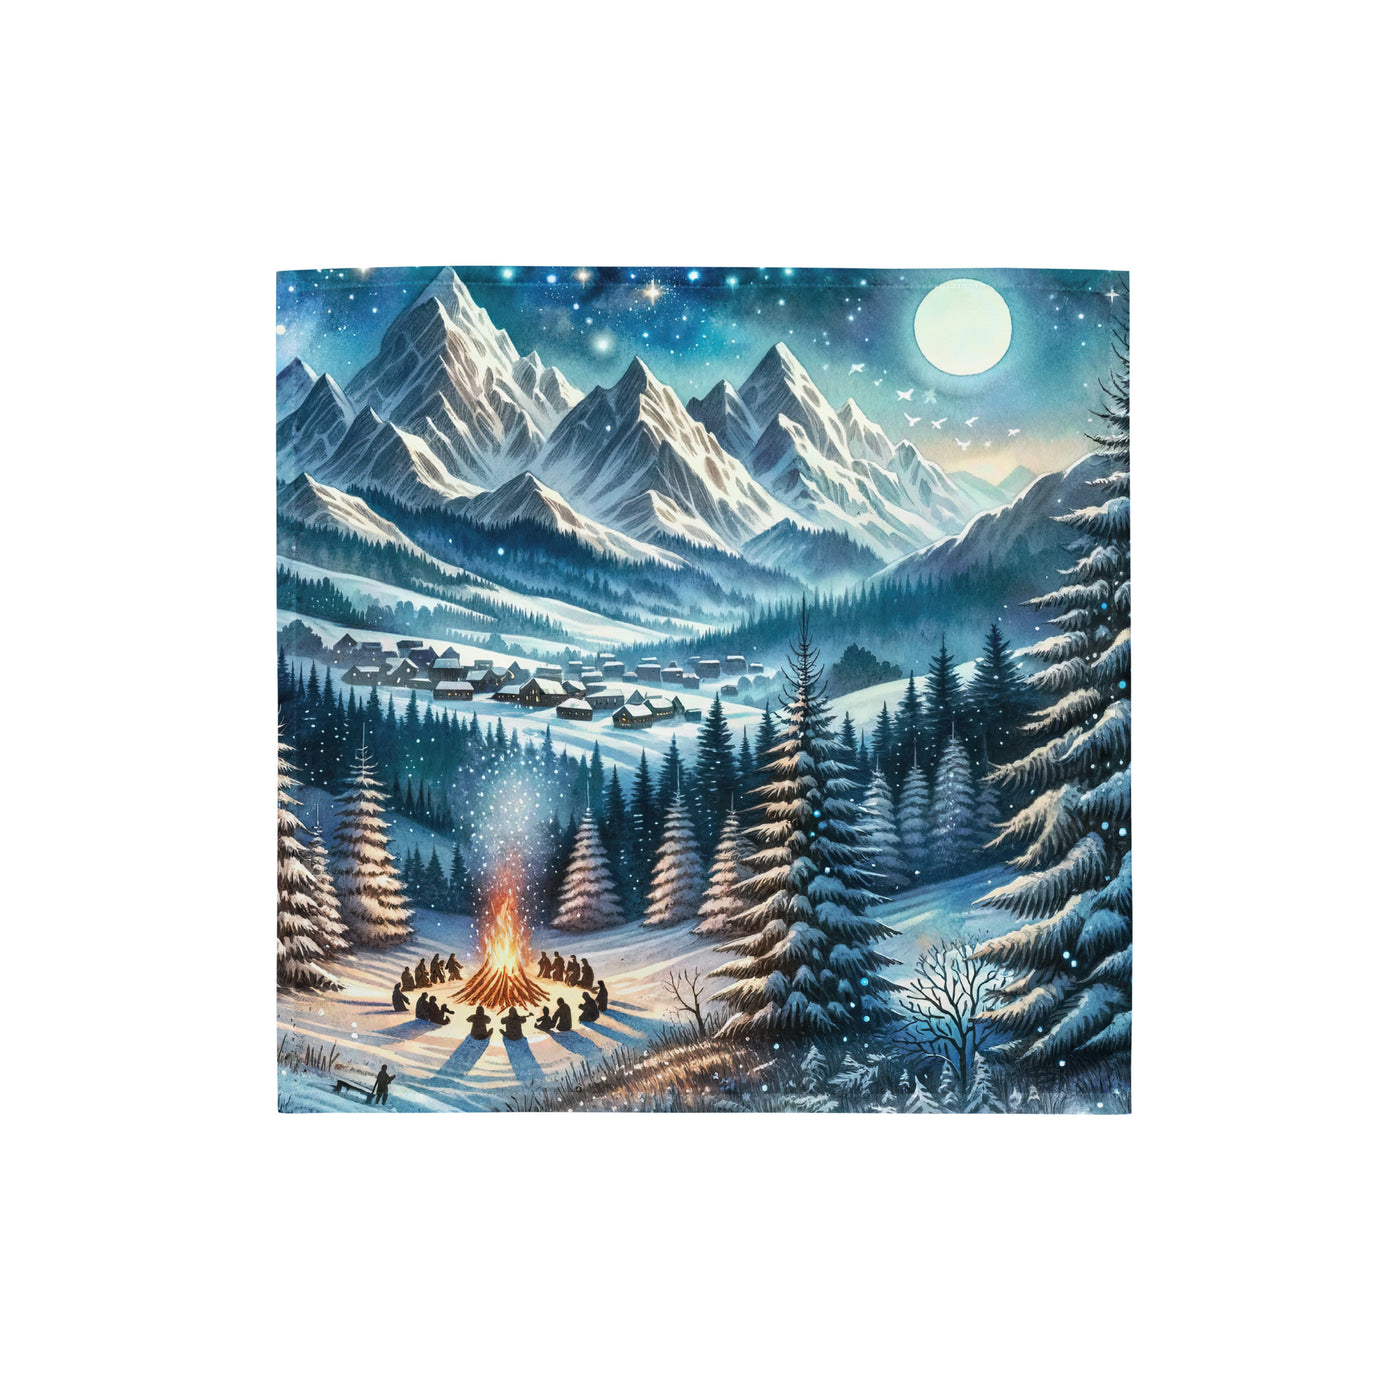 Aquarell eines Winterabends in den Alpen mit Lagerfeuer und Wanderern, glitzernder Neuschnee - Bandana (All-Over Print) camping xxx yyy zzz S